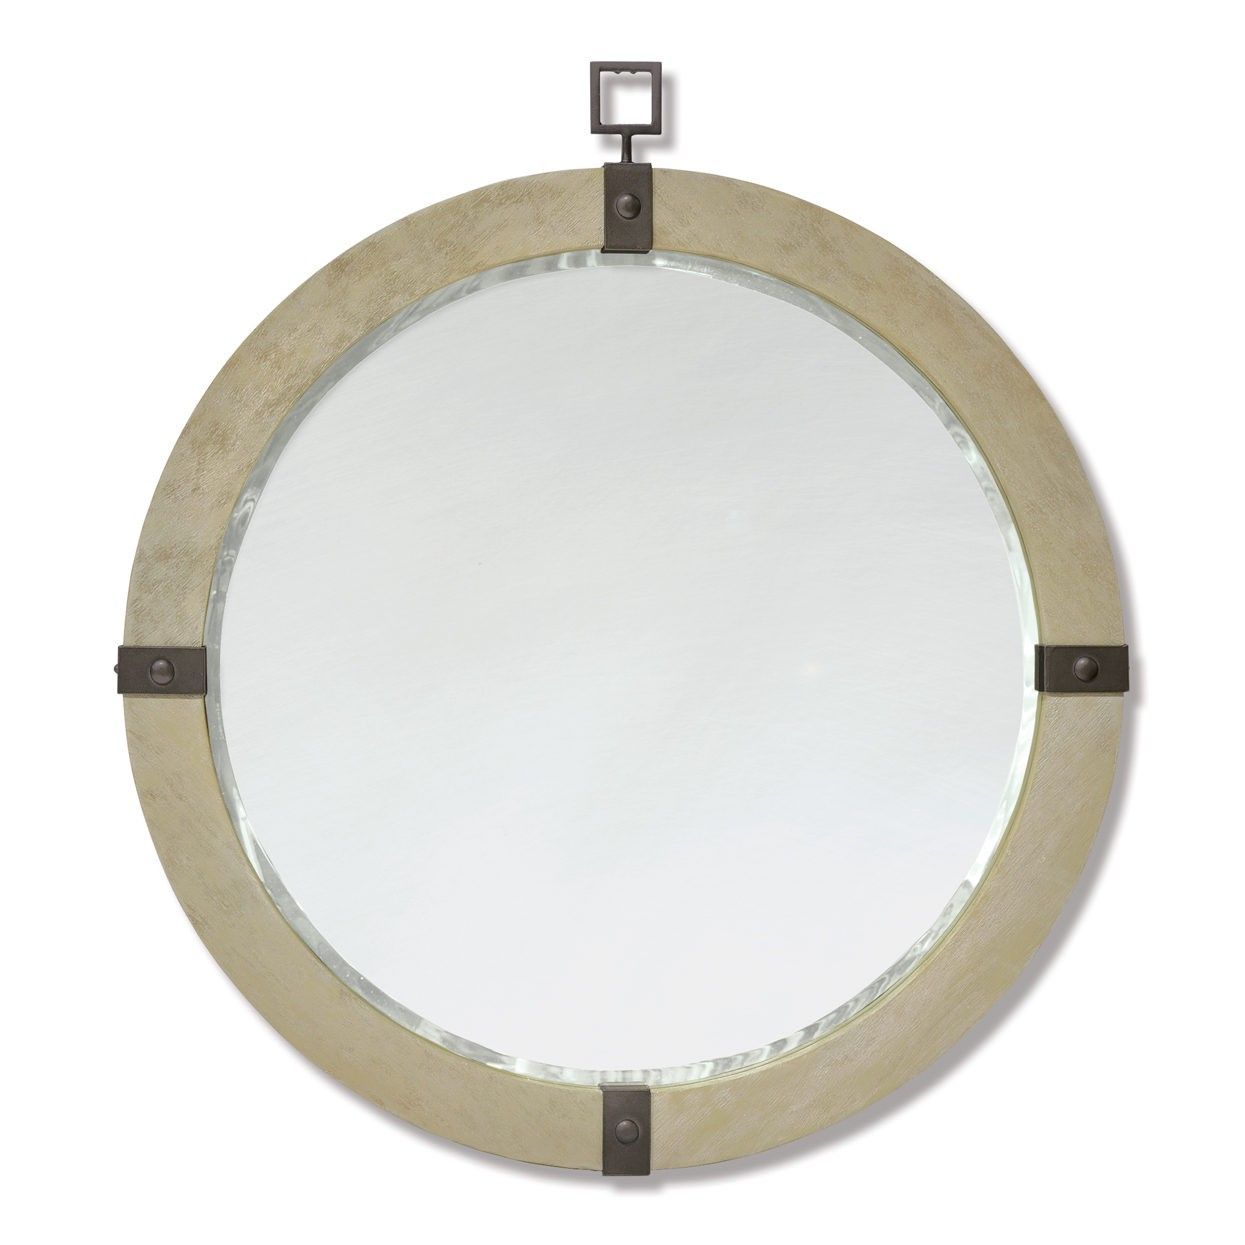 Palecek Brockton Round Mirror | Round Wall Mirror, Mirror Wall, Mirror Within Jagged Edge Round Wall Mirrors (View 12 of 15)